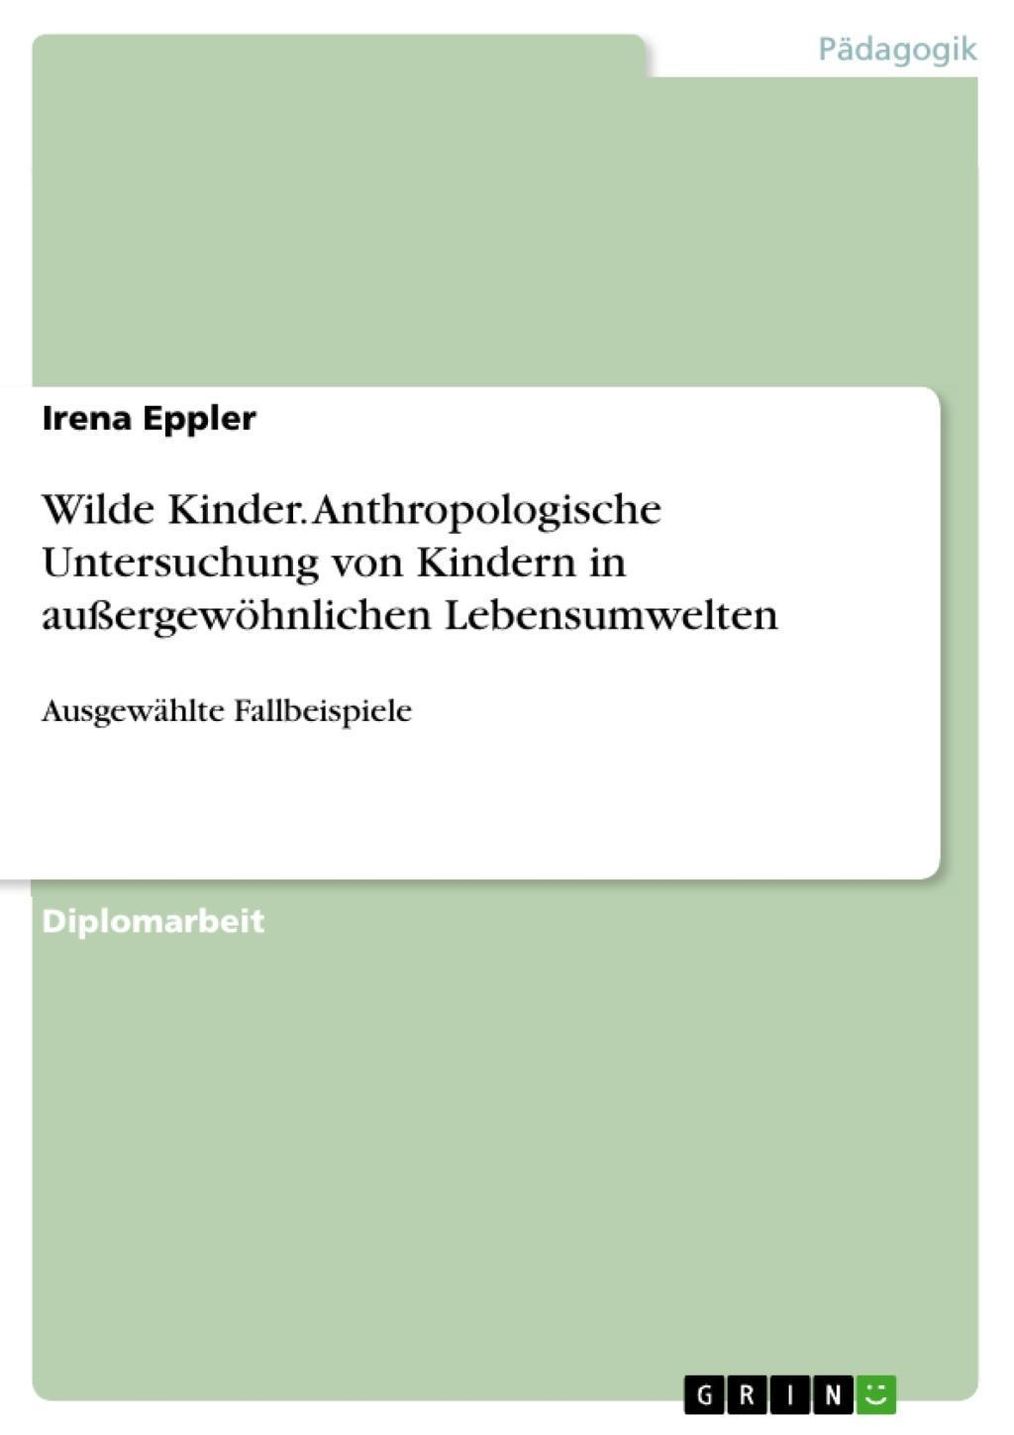 Wilde Kinder - Anthropologische Untersuchung von Kindern in  außergewöhnlichen Lebensumwelten anhand ausgewählter Fallbeispiele eBook v.  Irena Eppler | Weltbild